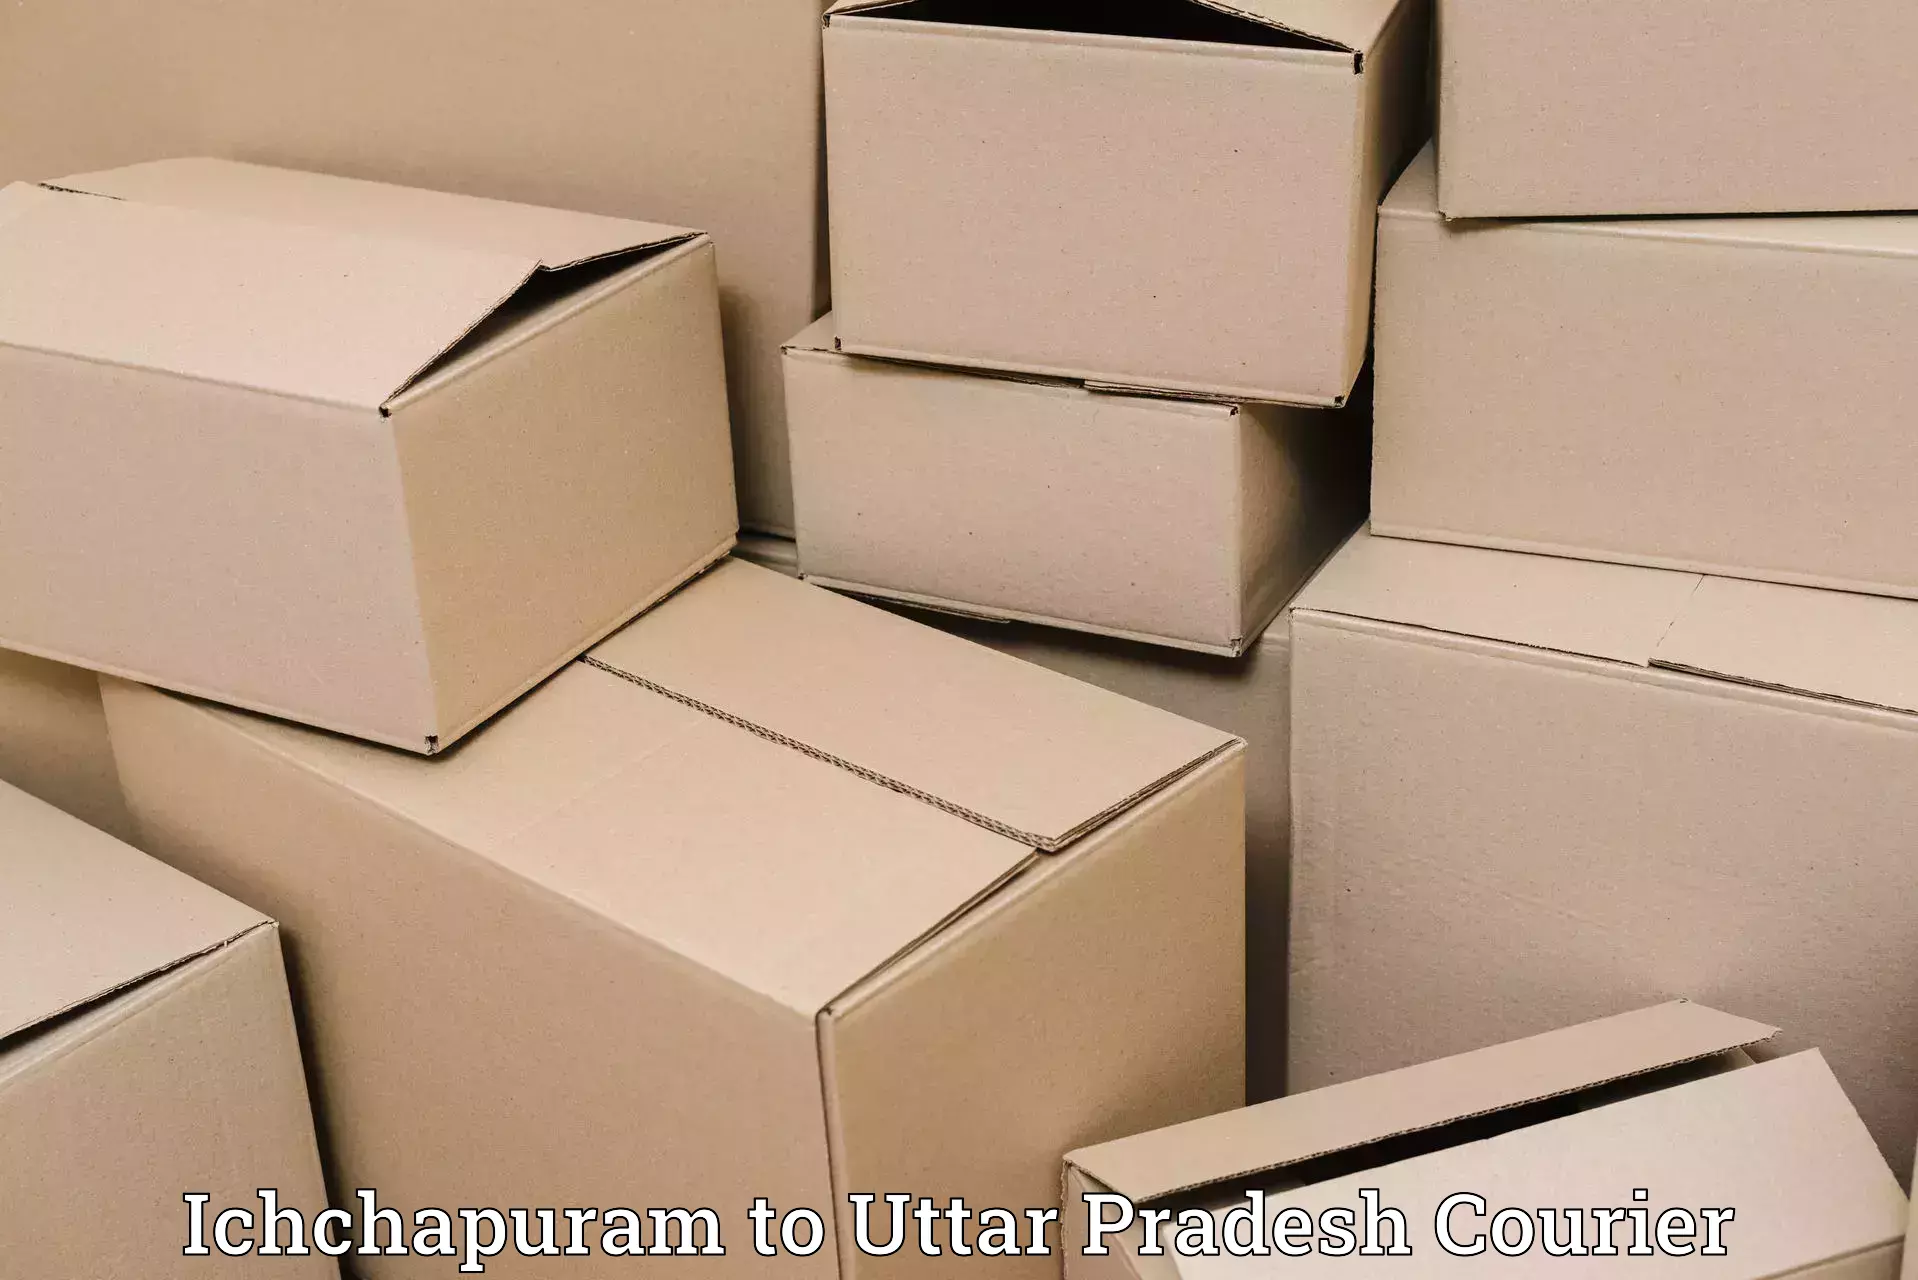 User-friendly courier app Ichchapuram to Agra